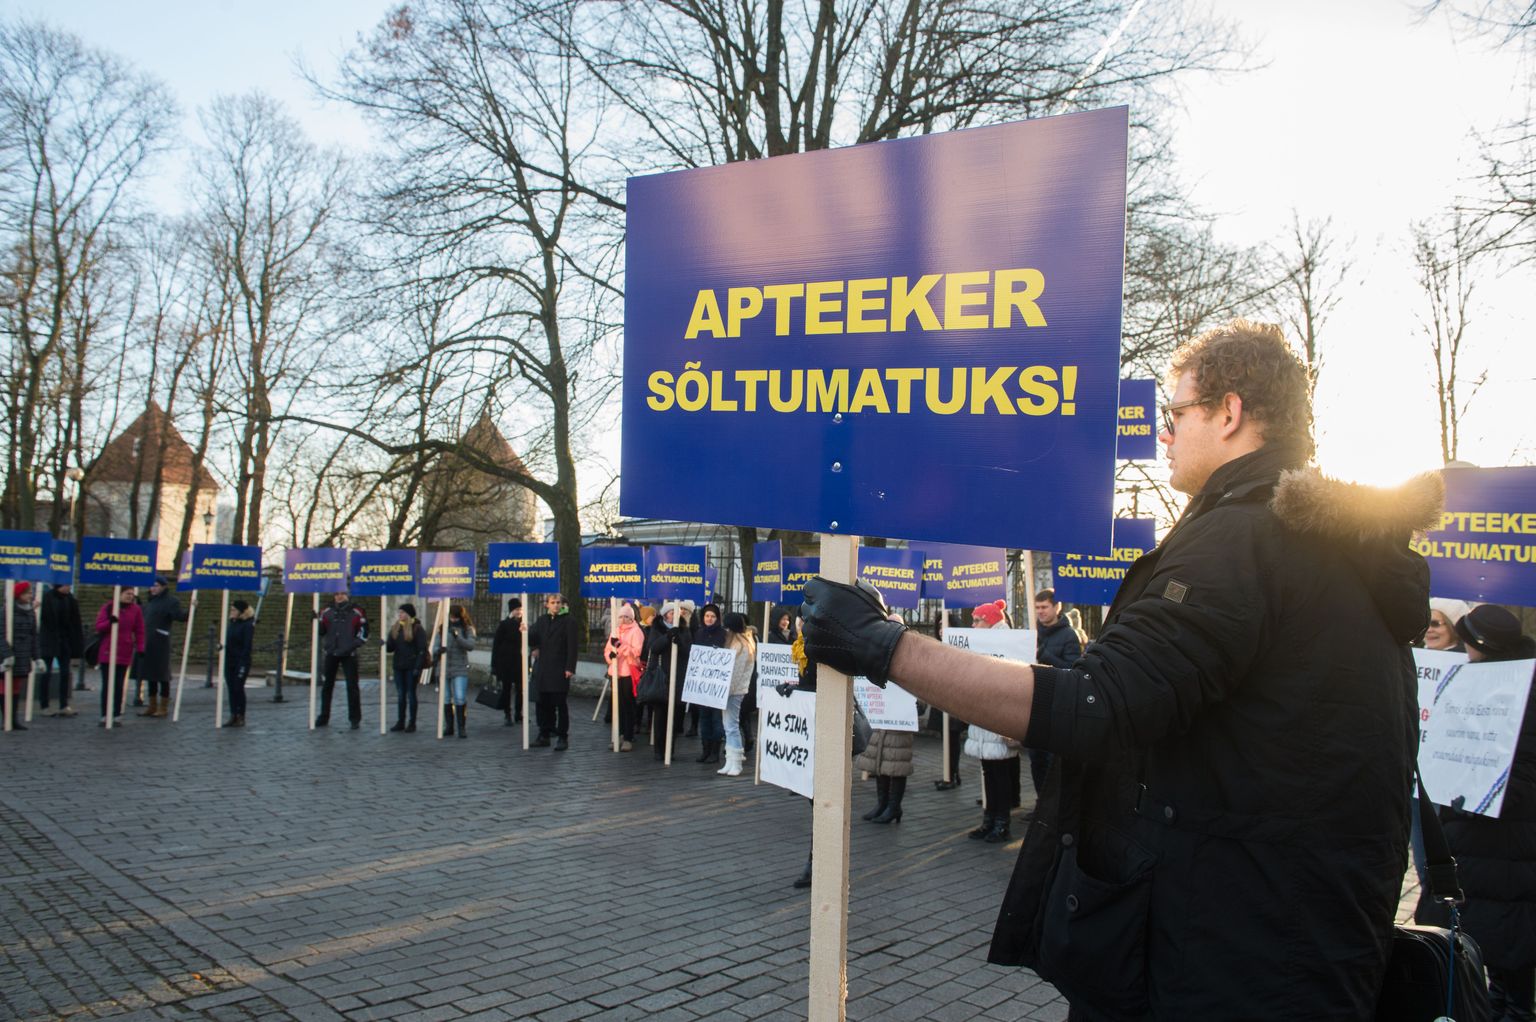 Apteekrid väljendasid oma seisukohti ka eelmisel nädalal Toompeal toimunud meeleavalduse käigus.